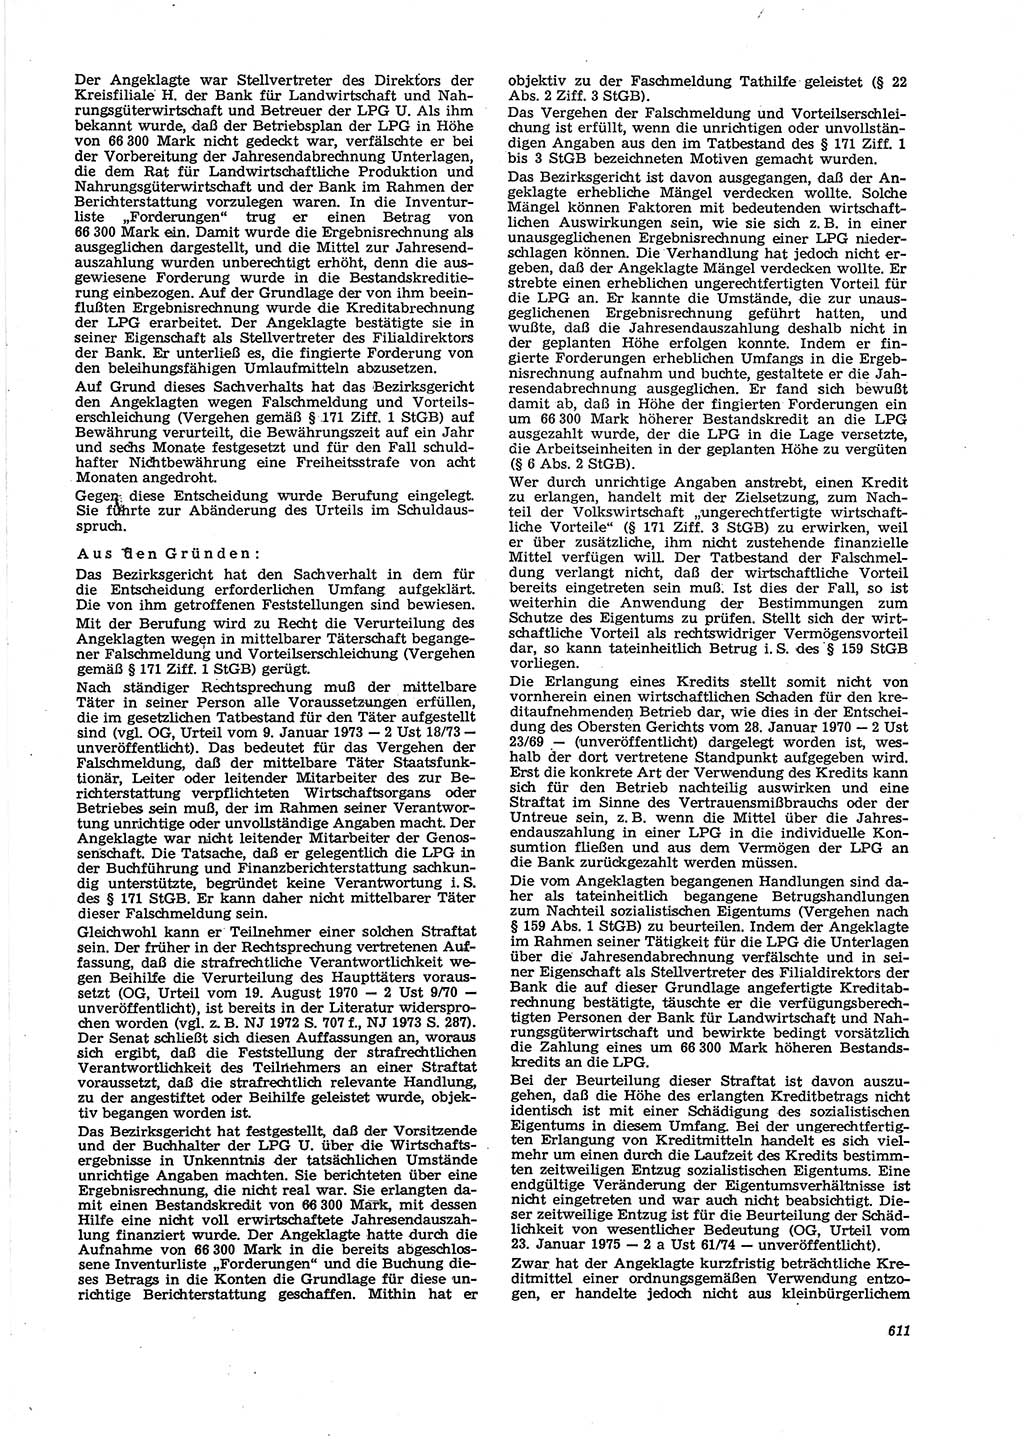 Neue Justiz (NJ), Zeitschrift für Recht und Rechtswissenschaft [Deutsche Demokratische Republik (DDR)], 29. Jahrgang 1975, Seite 611 (NJ DDR 1975, S. 611)